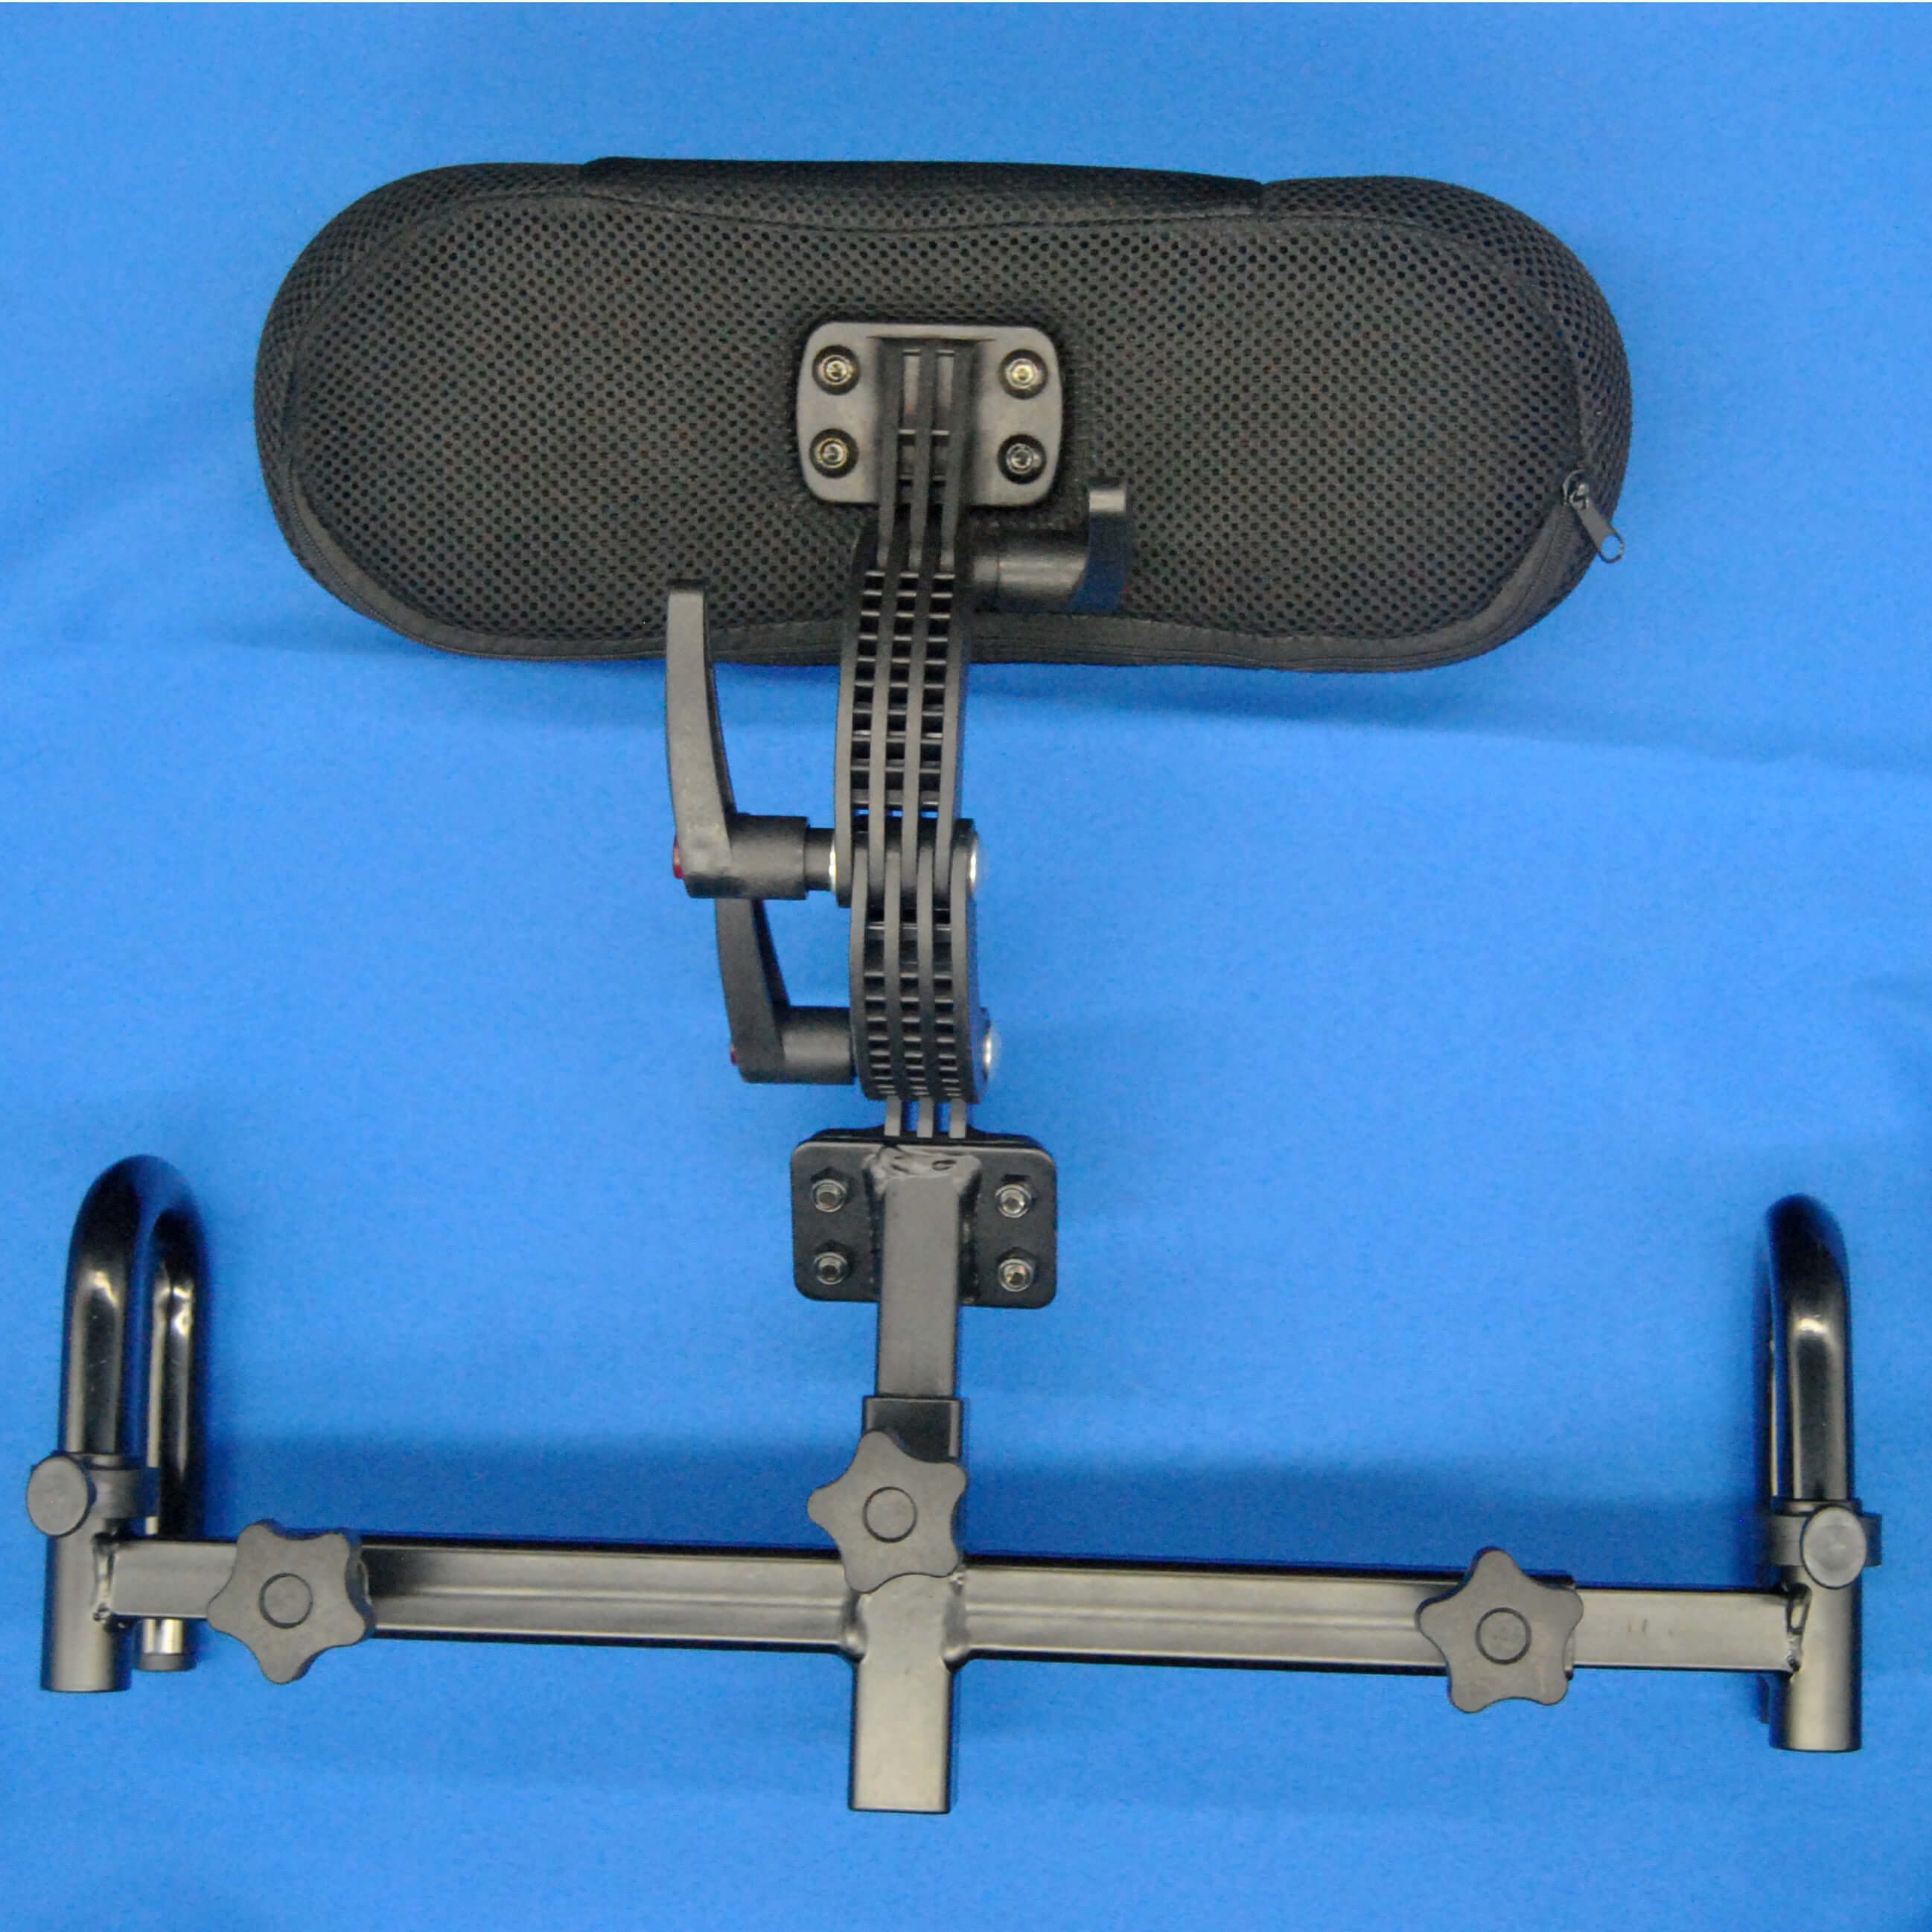 Adecuado para sillas de ruedas de la almohadilla de piezas de repuesto apoyo para la cabeza para sillas de ruedas